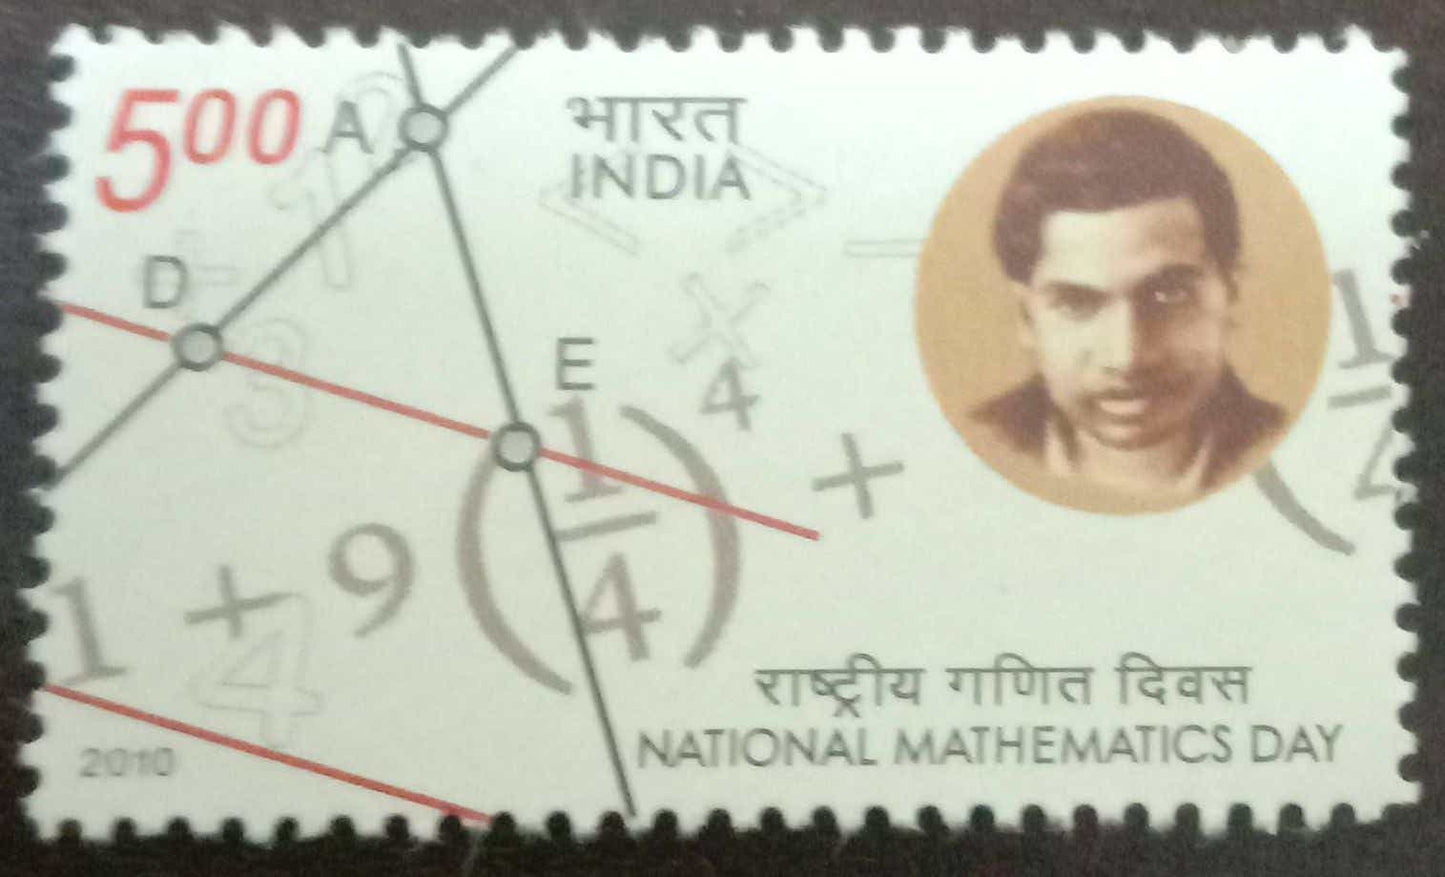 India Mint-2012 National Mathematics Day.